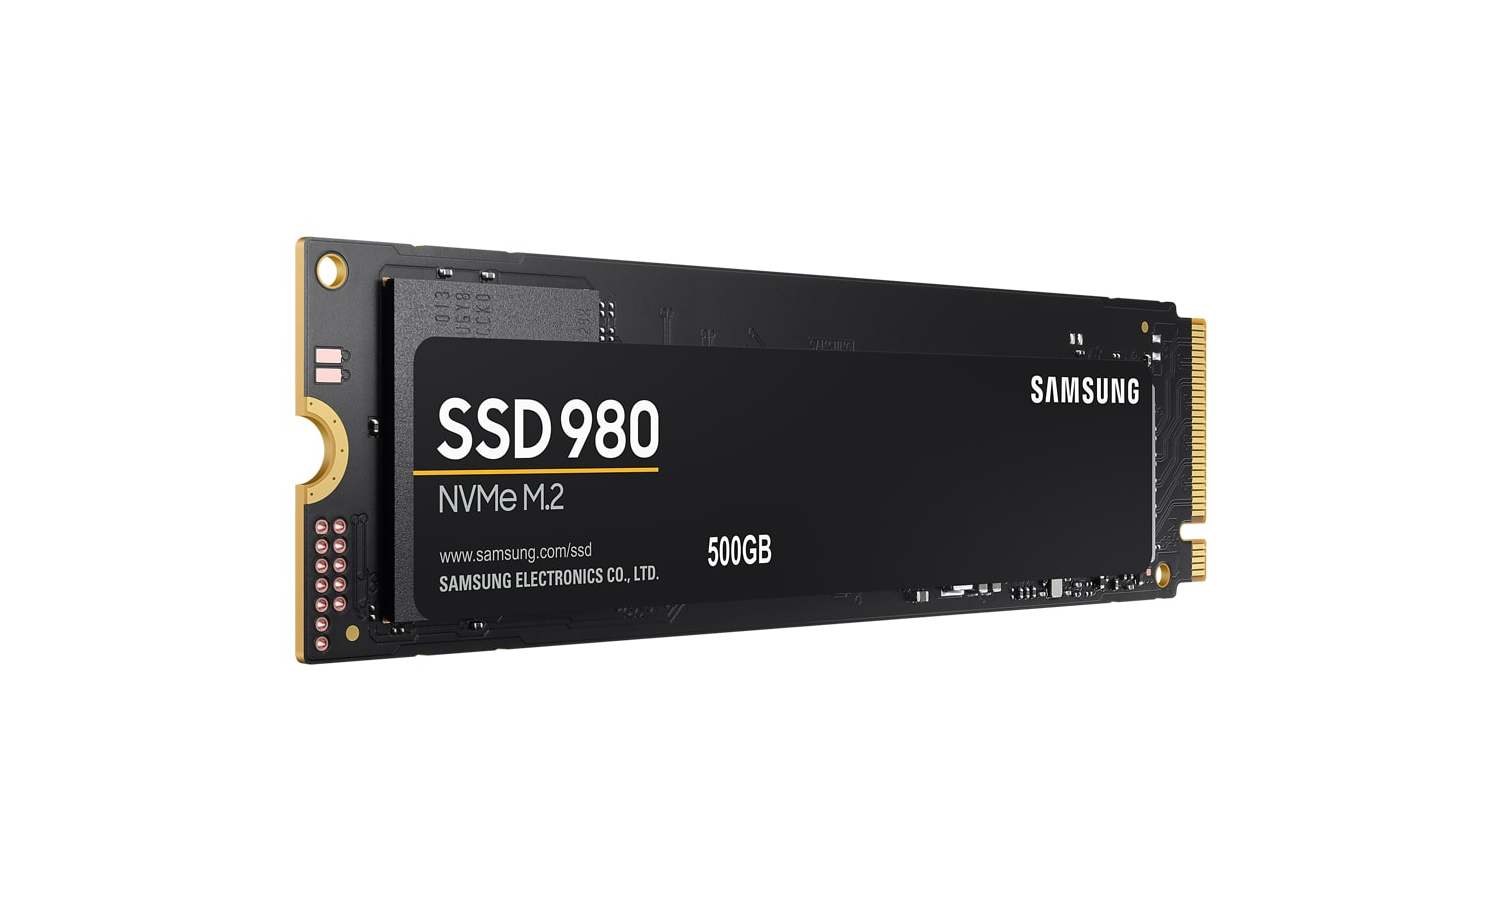 Samsung 980 500GB M.2 Nvme MZ-V8V500BW